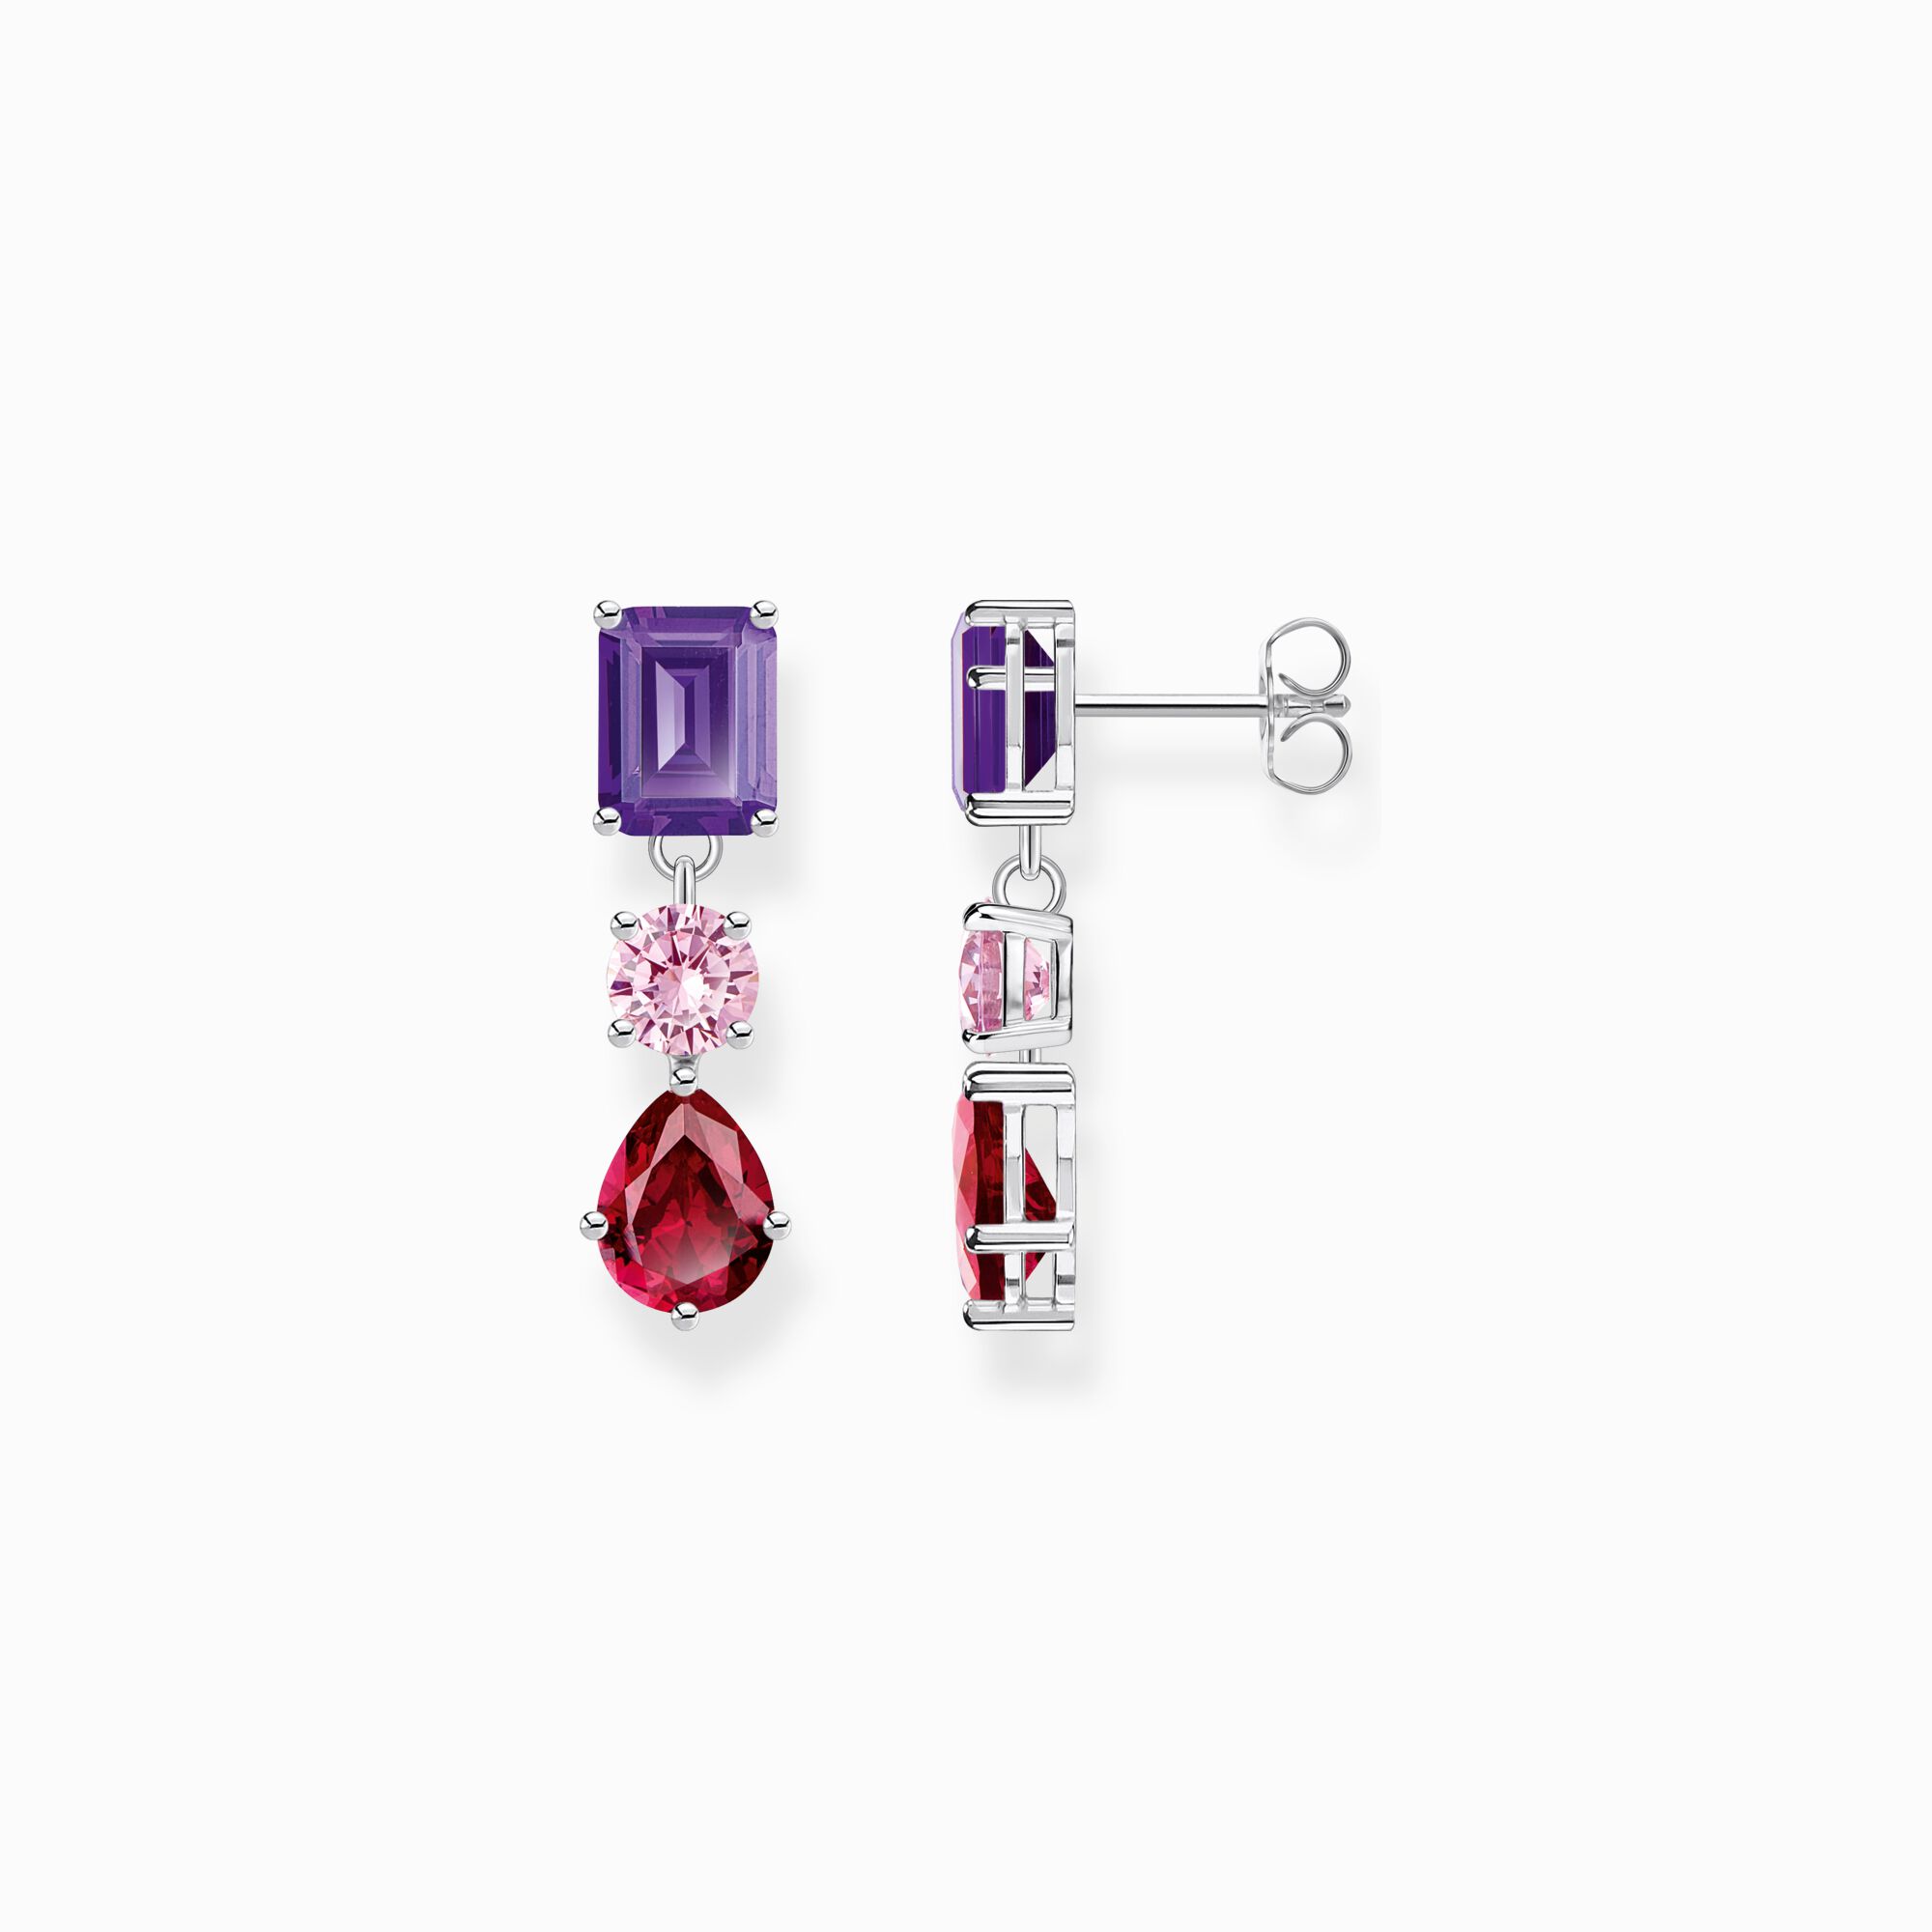 Ohrring mit Steinen in Rot, Rosa und Violett aus der  Kollektion im Online Shop von THOMAS SABO